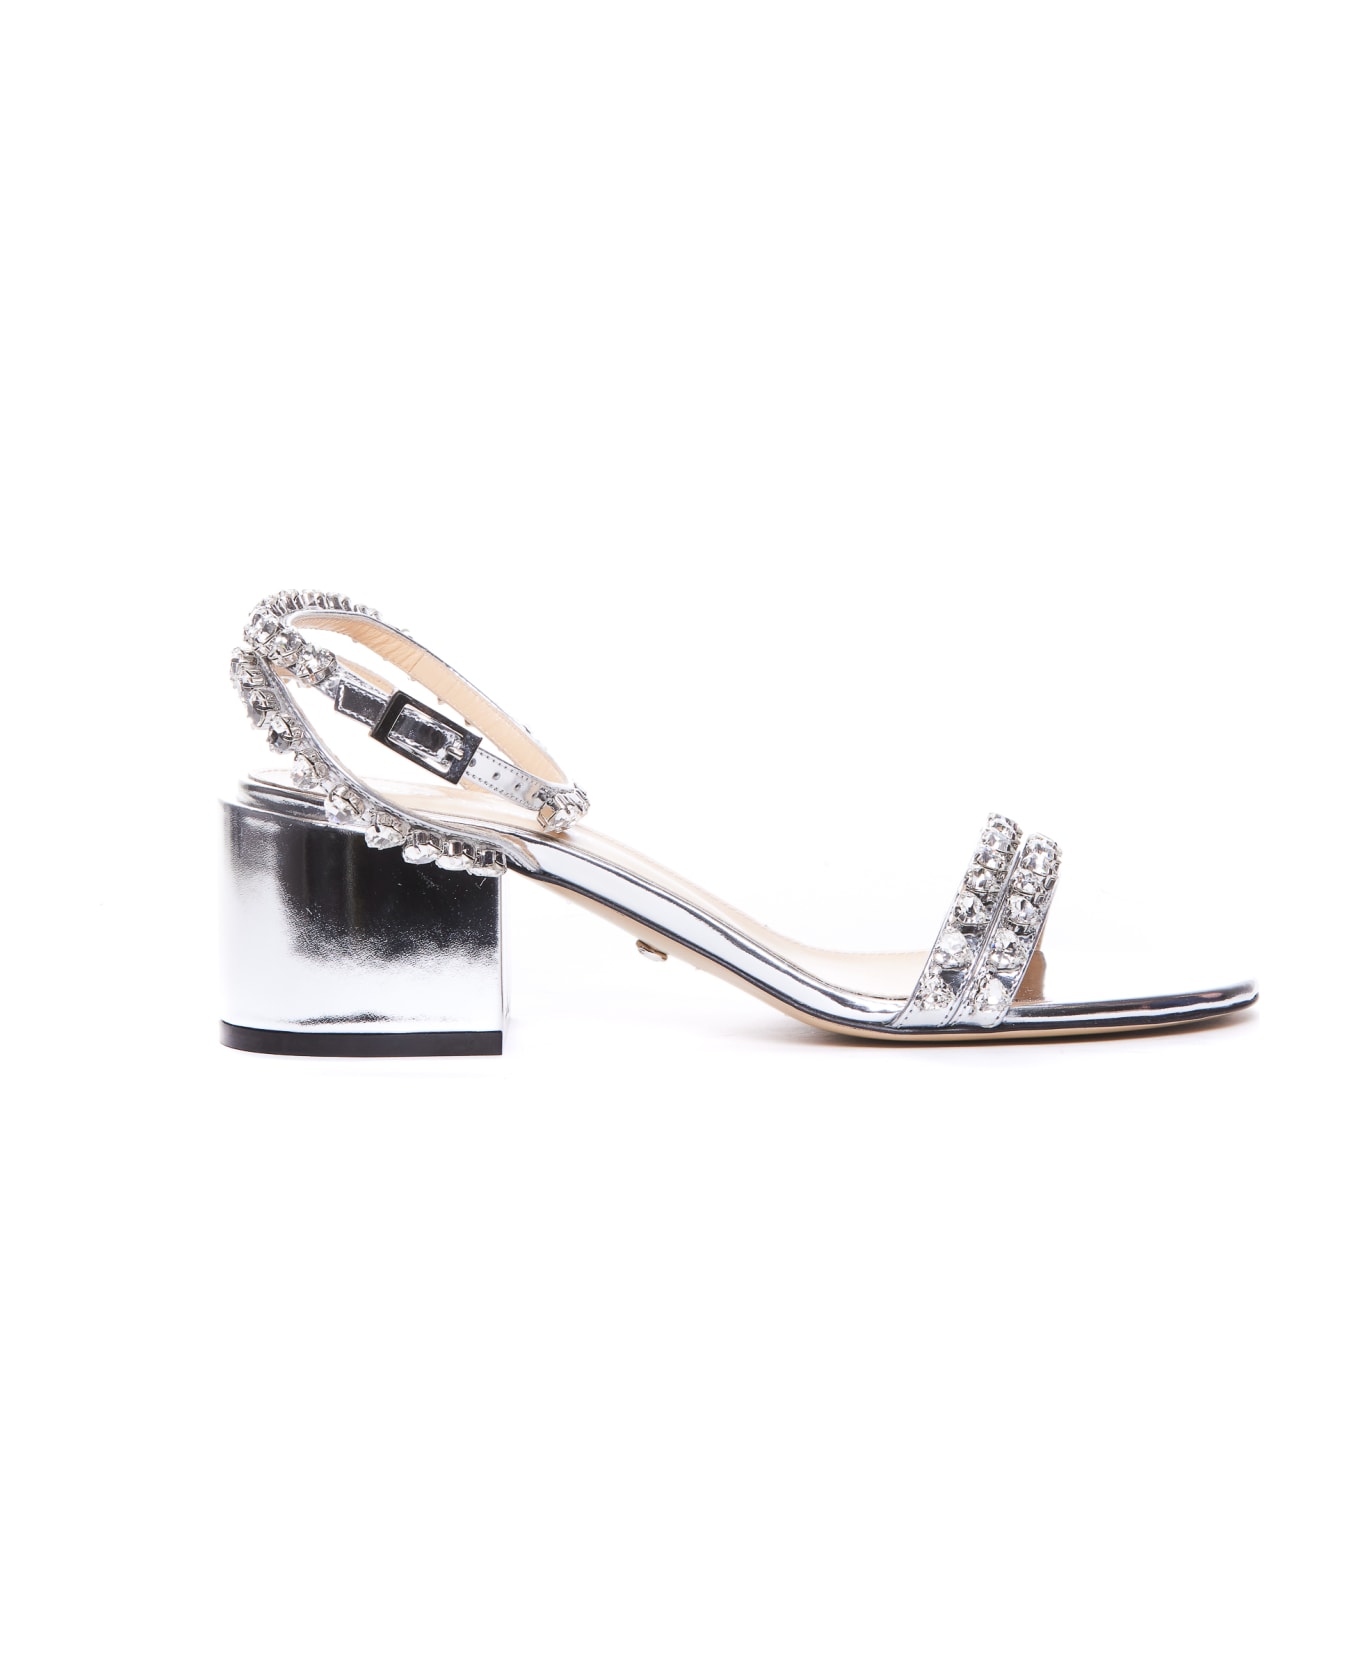 Mach & Mach Audrey Crystal Pump Sandals - Silver